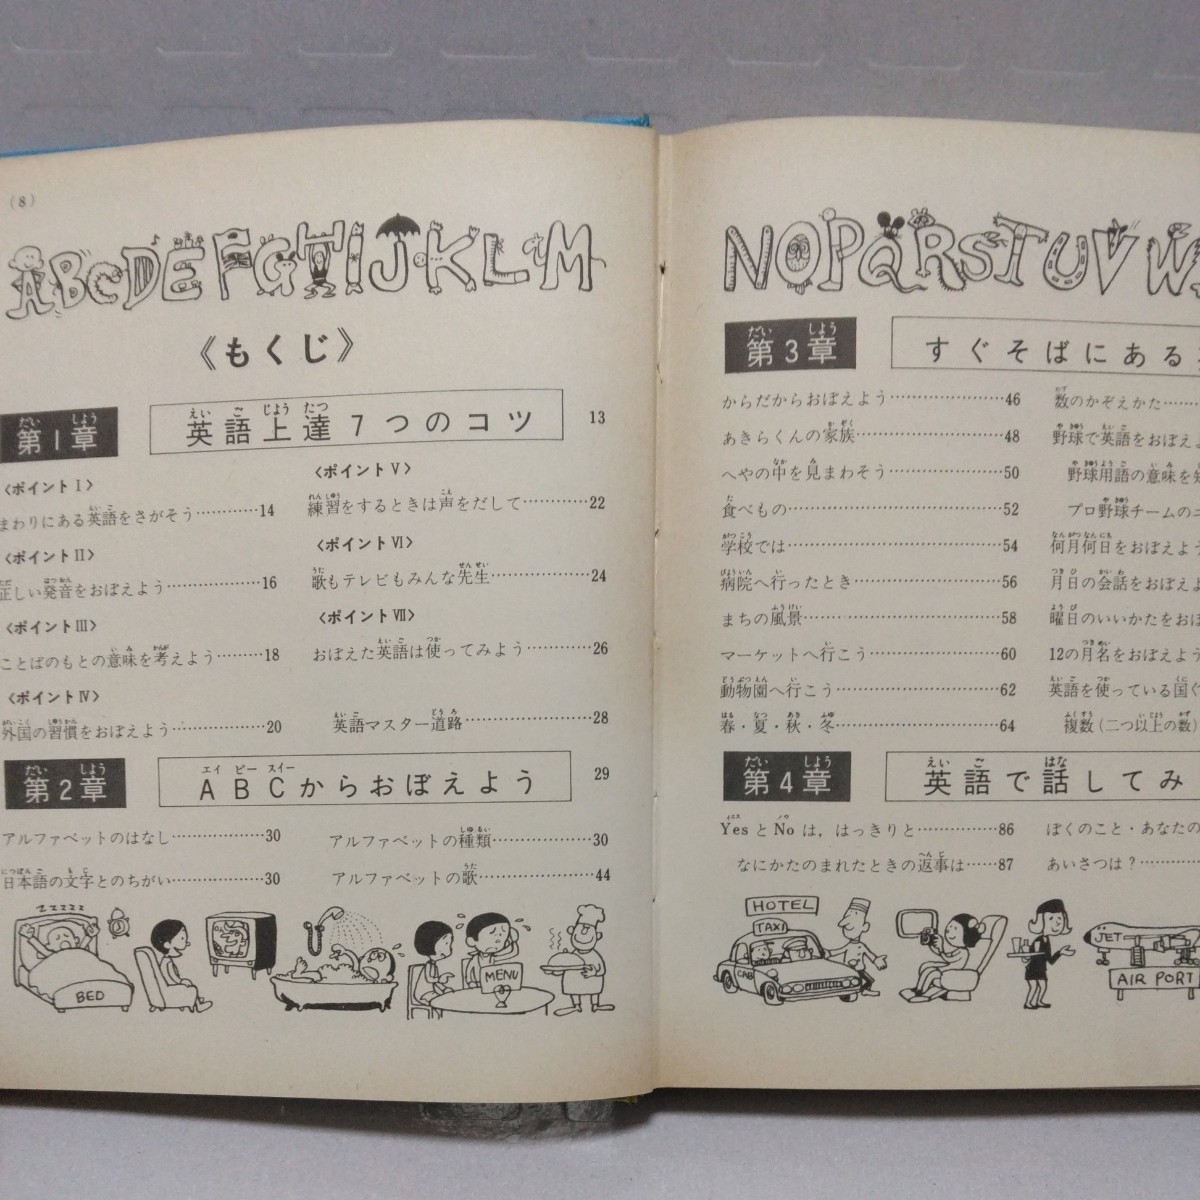  английский язык введение Shogakukan Inc. введение различные предметы серии ..|. 10 гроза новый следующий . Showa 47 год 